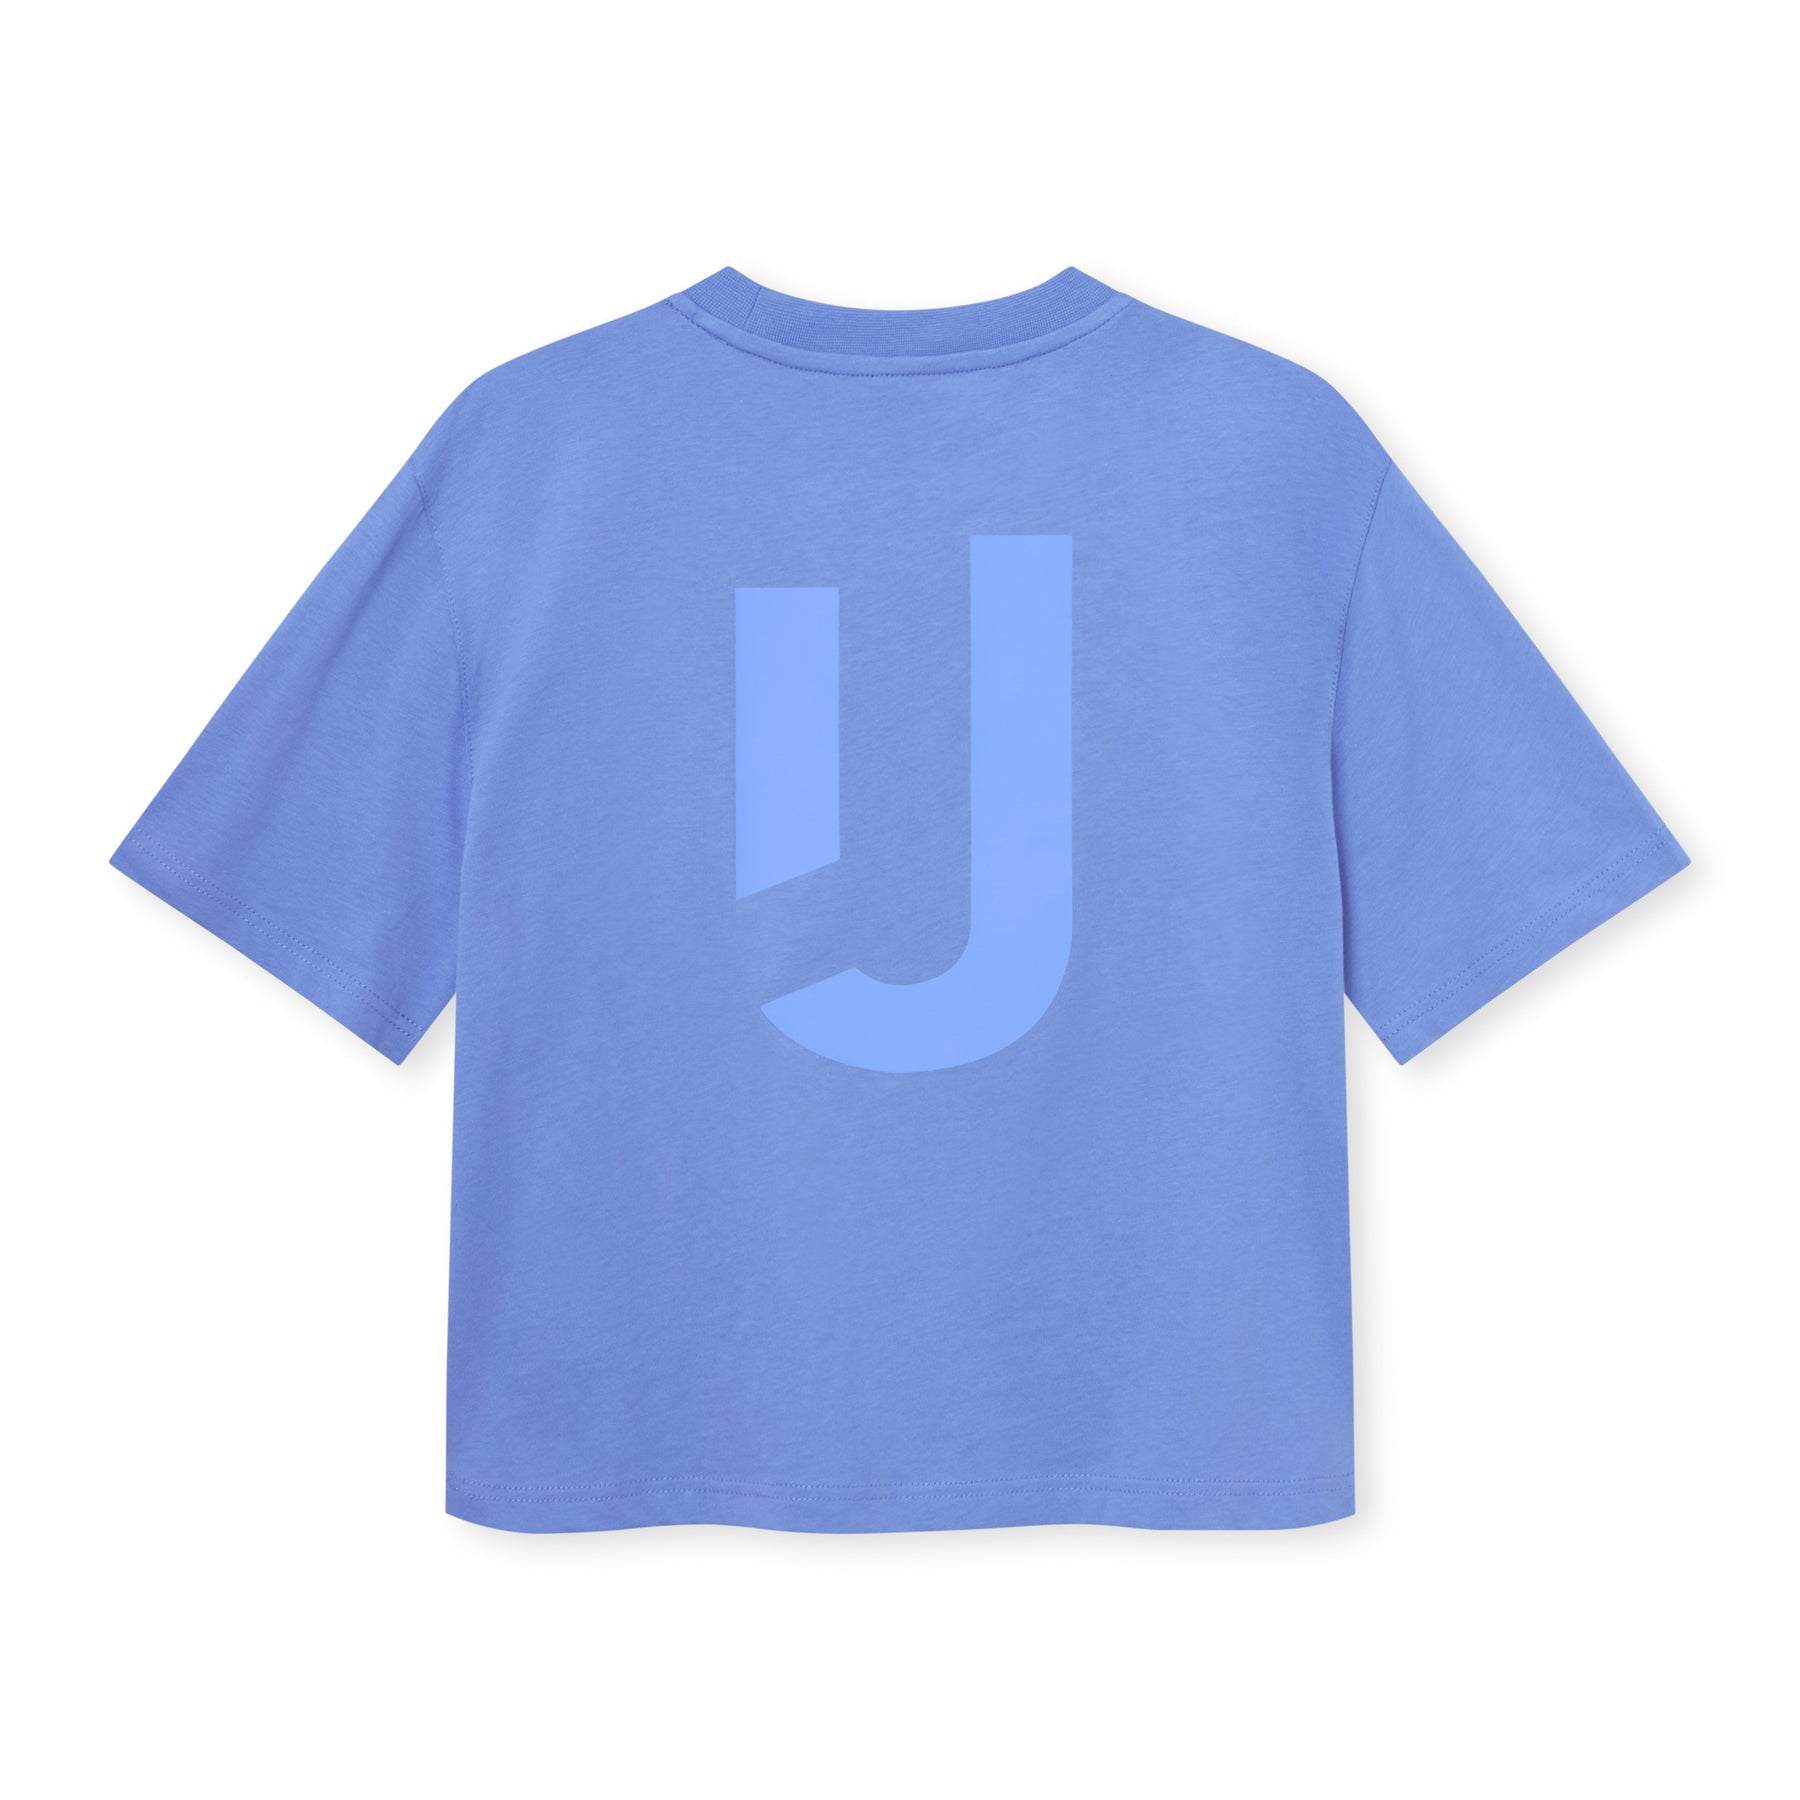 Cropped T-Shirt "Zoey JU"